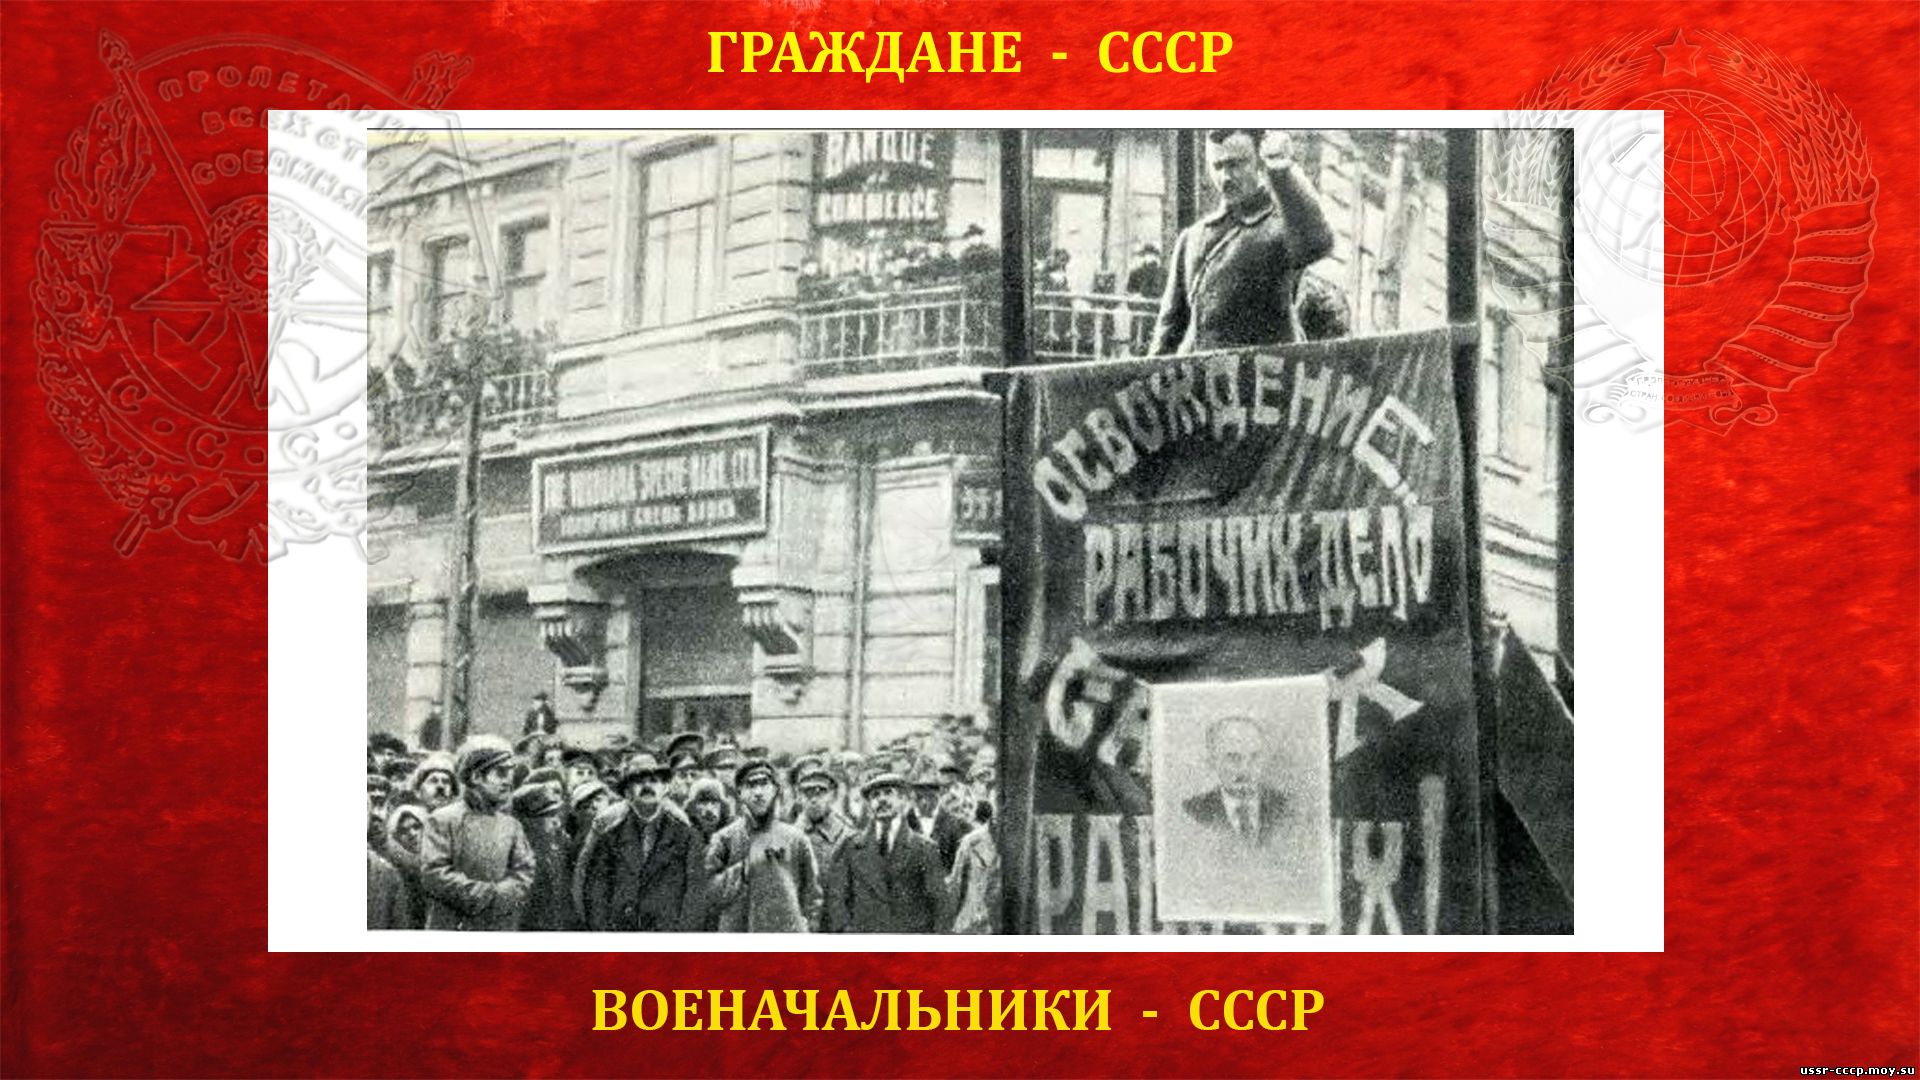 Бал мышковской 29.12 1896 как назывался. 25 Октября 1922 Владивосток.